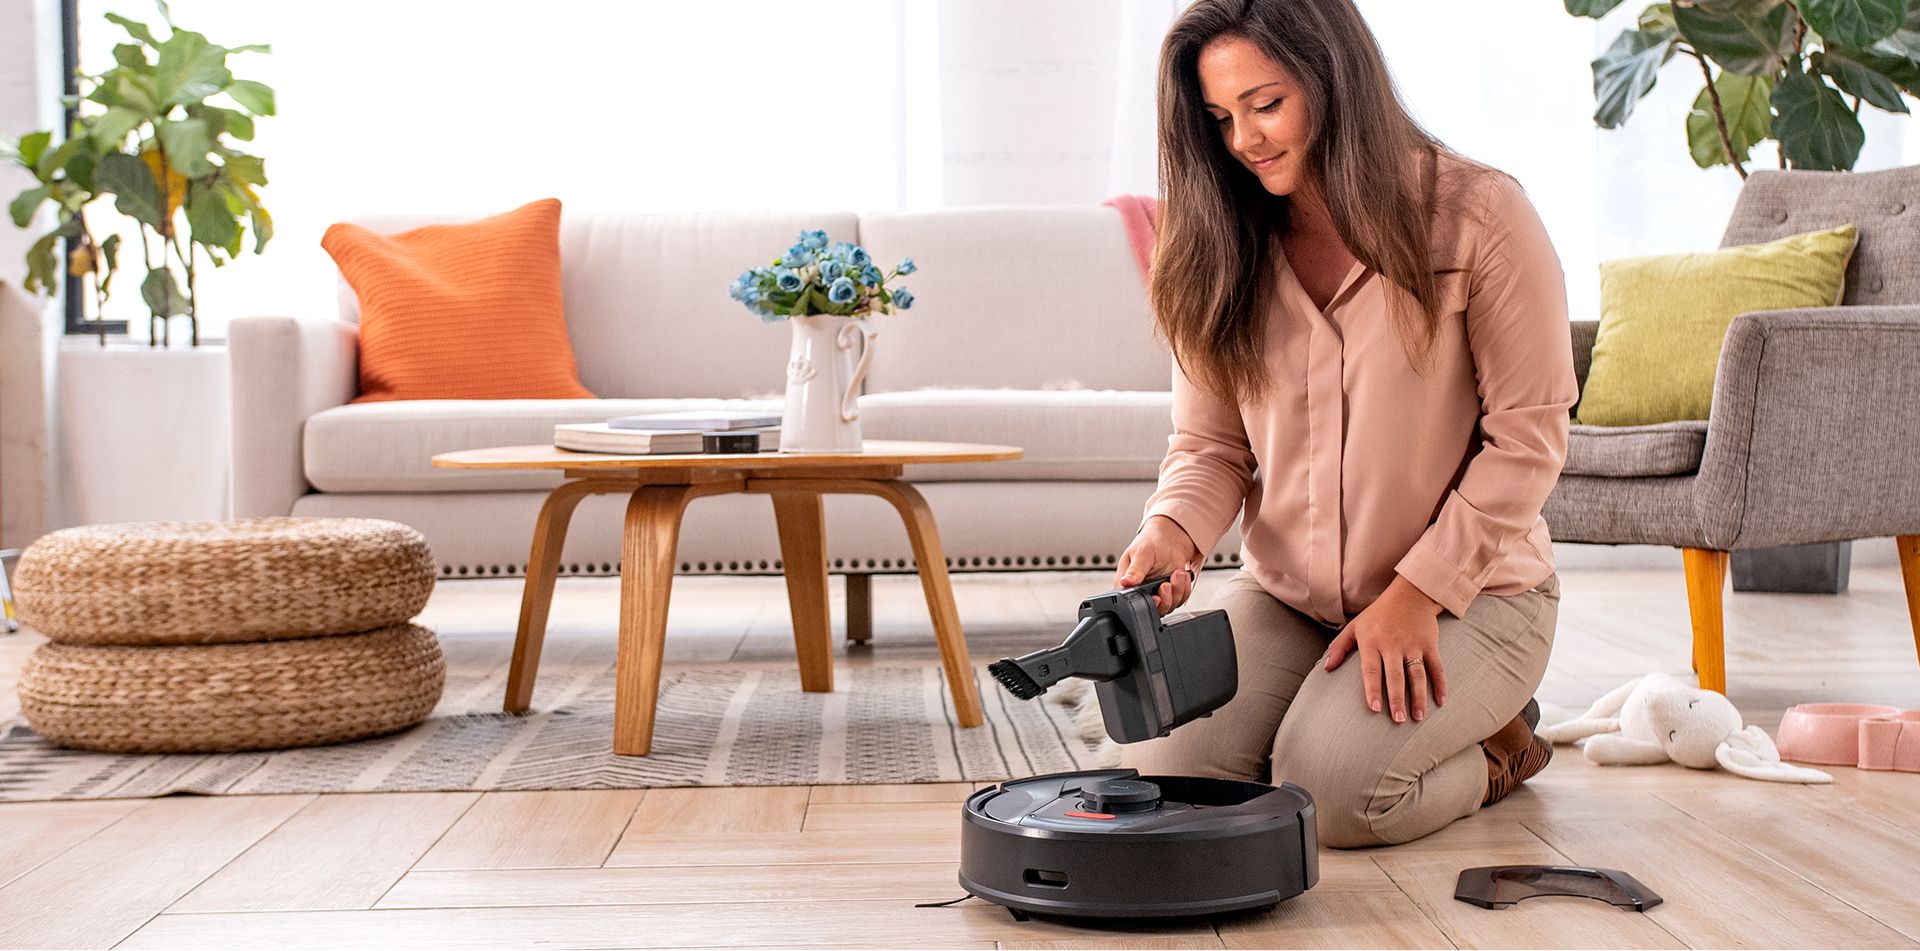 HiaerTAB Tabot Robot Vacuum / mop